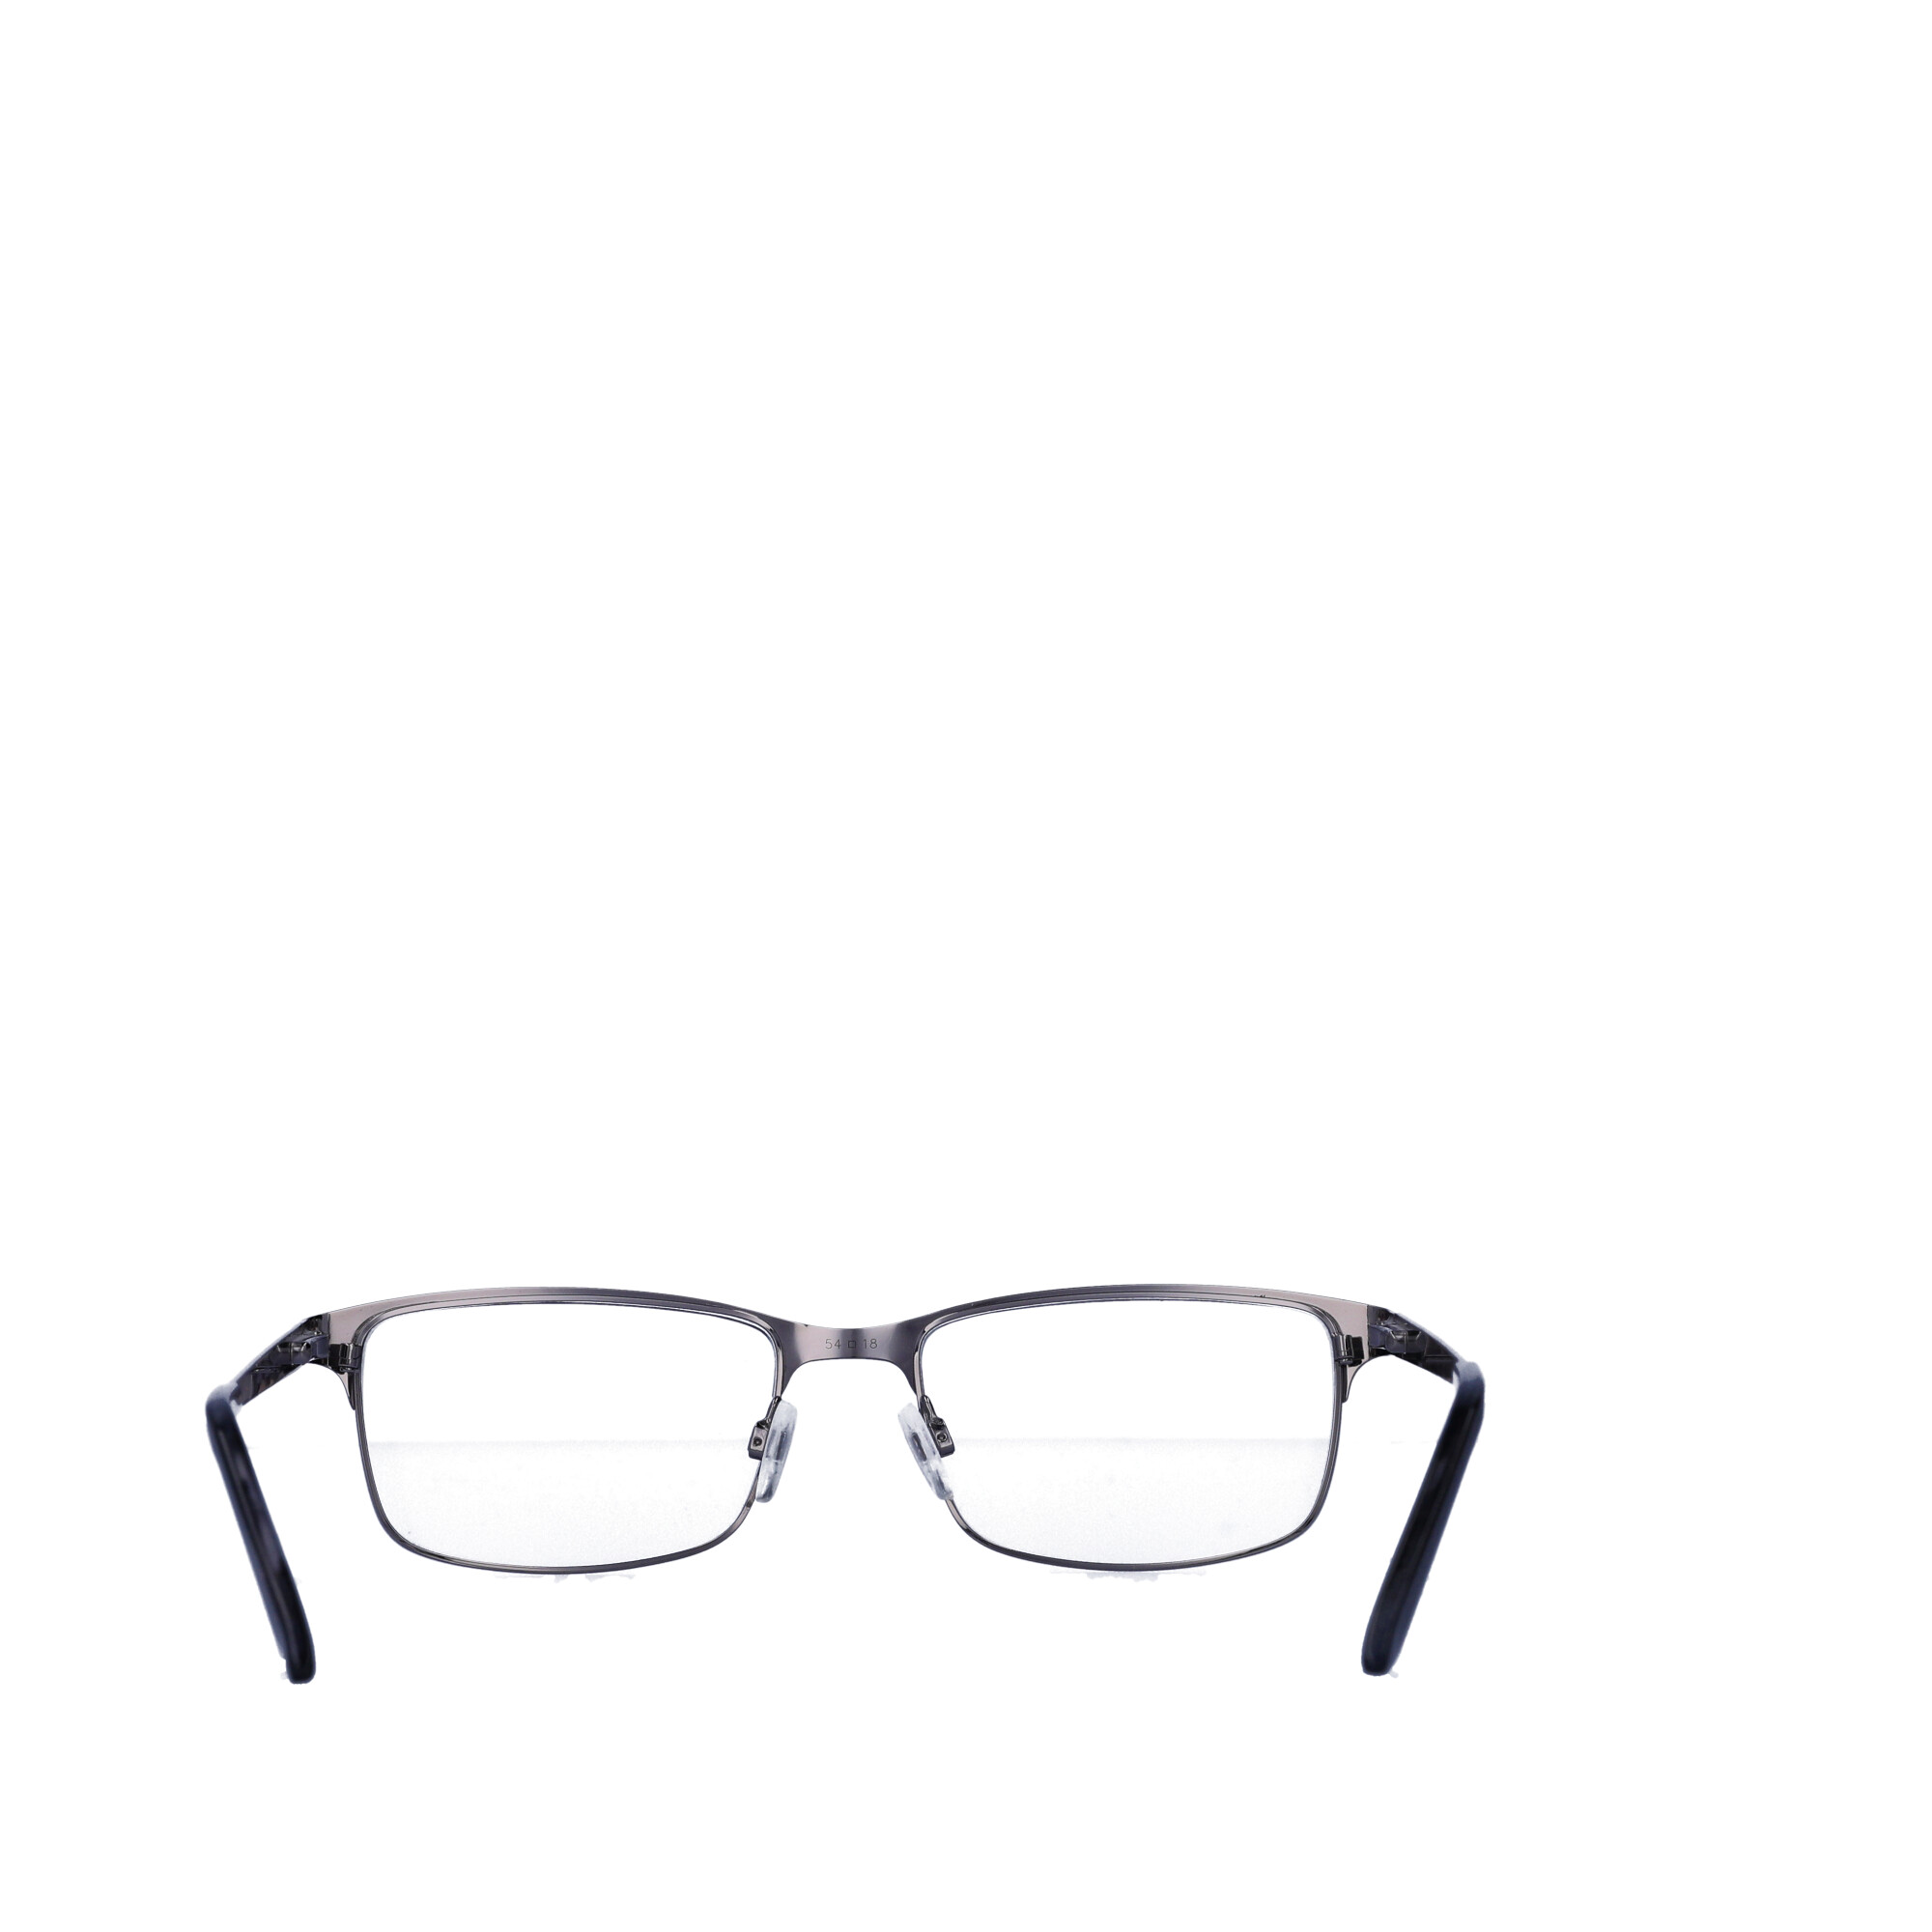 Walmart Men's Rx'able Eyeglasses, Mop41, Dark Grey, 54-18-145 - image 3 of 13